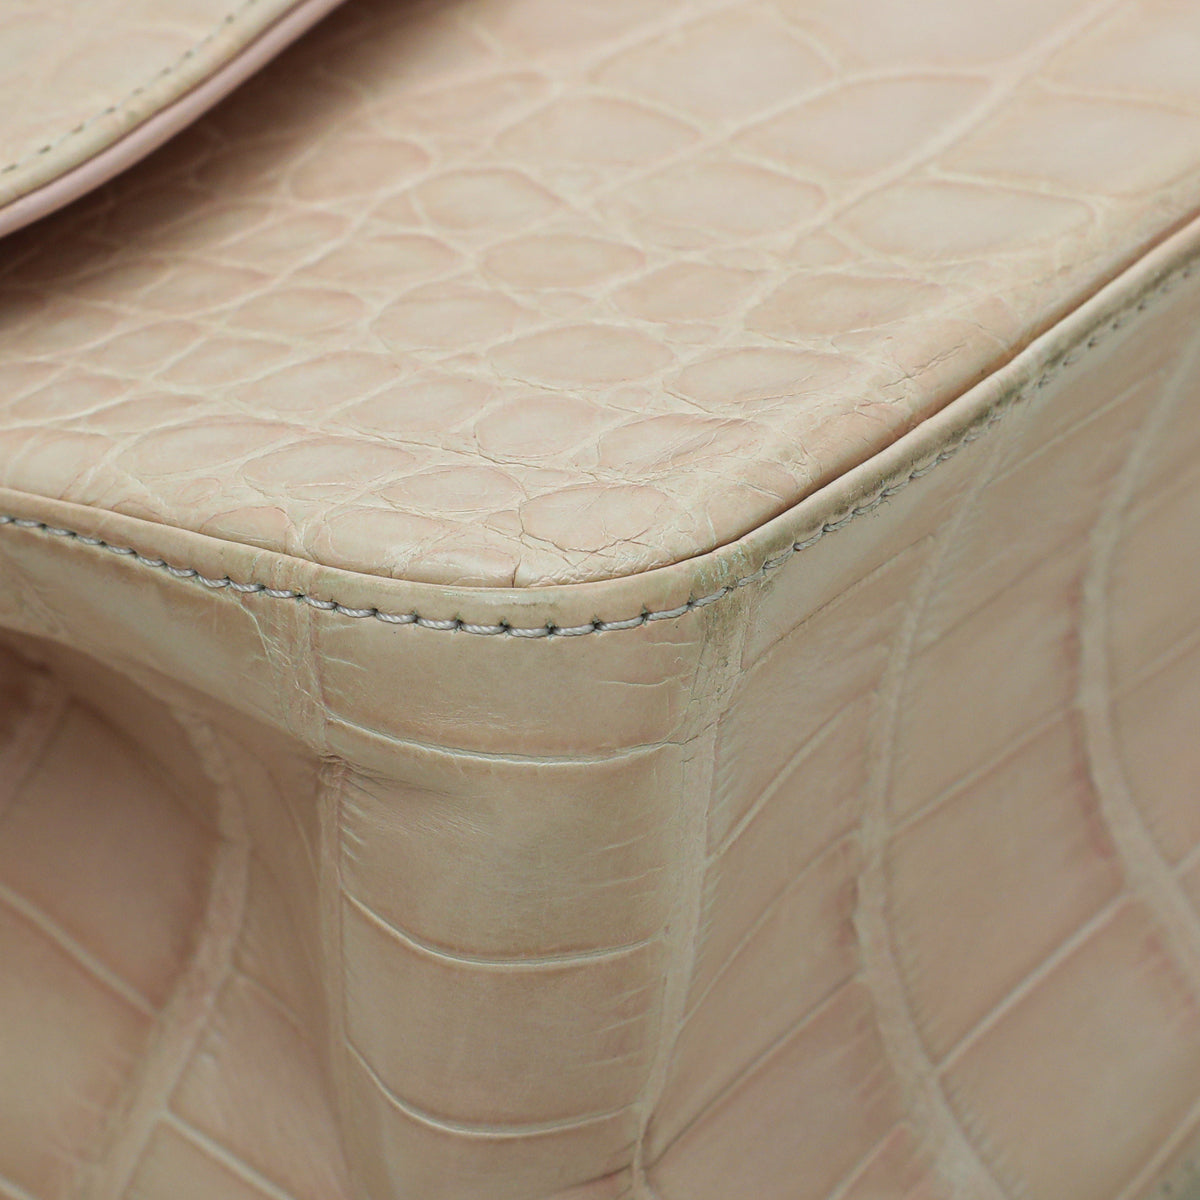 Chanel Pinkish Beige Alligator Classic Double Flap Jumbo Bag